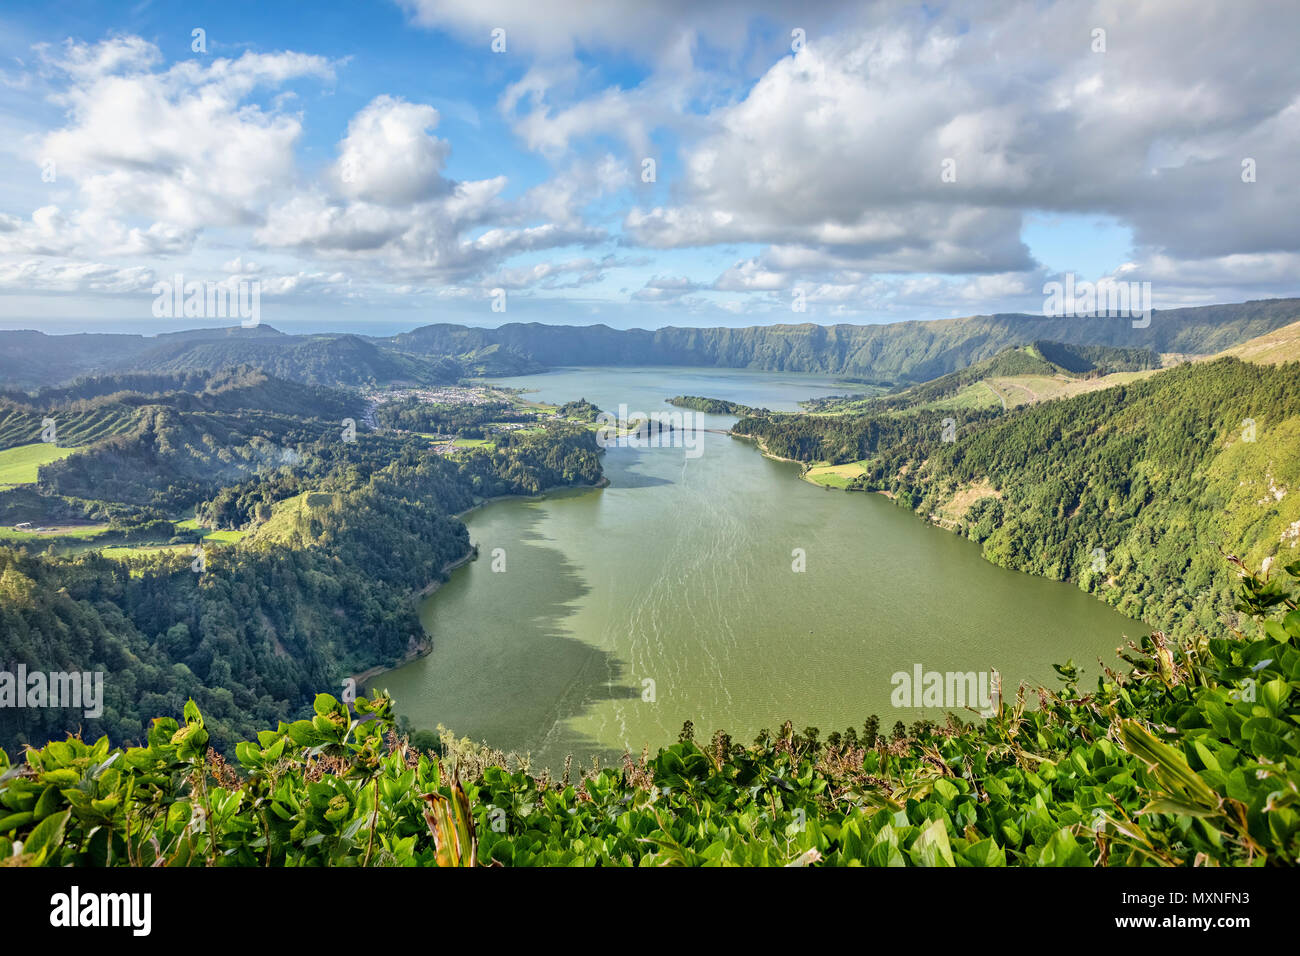 Sete Cidades - una doble lago situado en el cráter de un volcán, la isla de Sao Miguel, Azores, Portugal Foto de stock